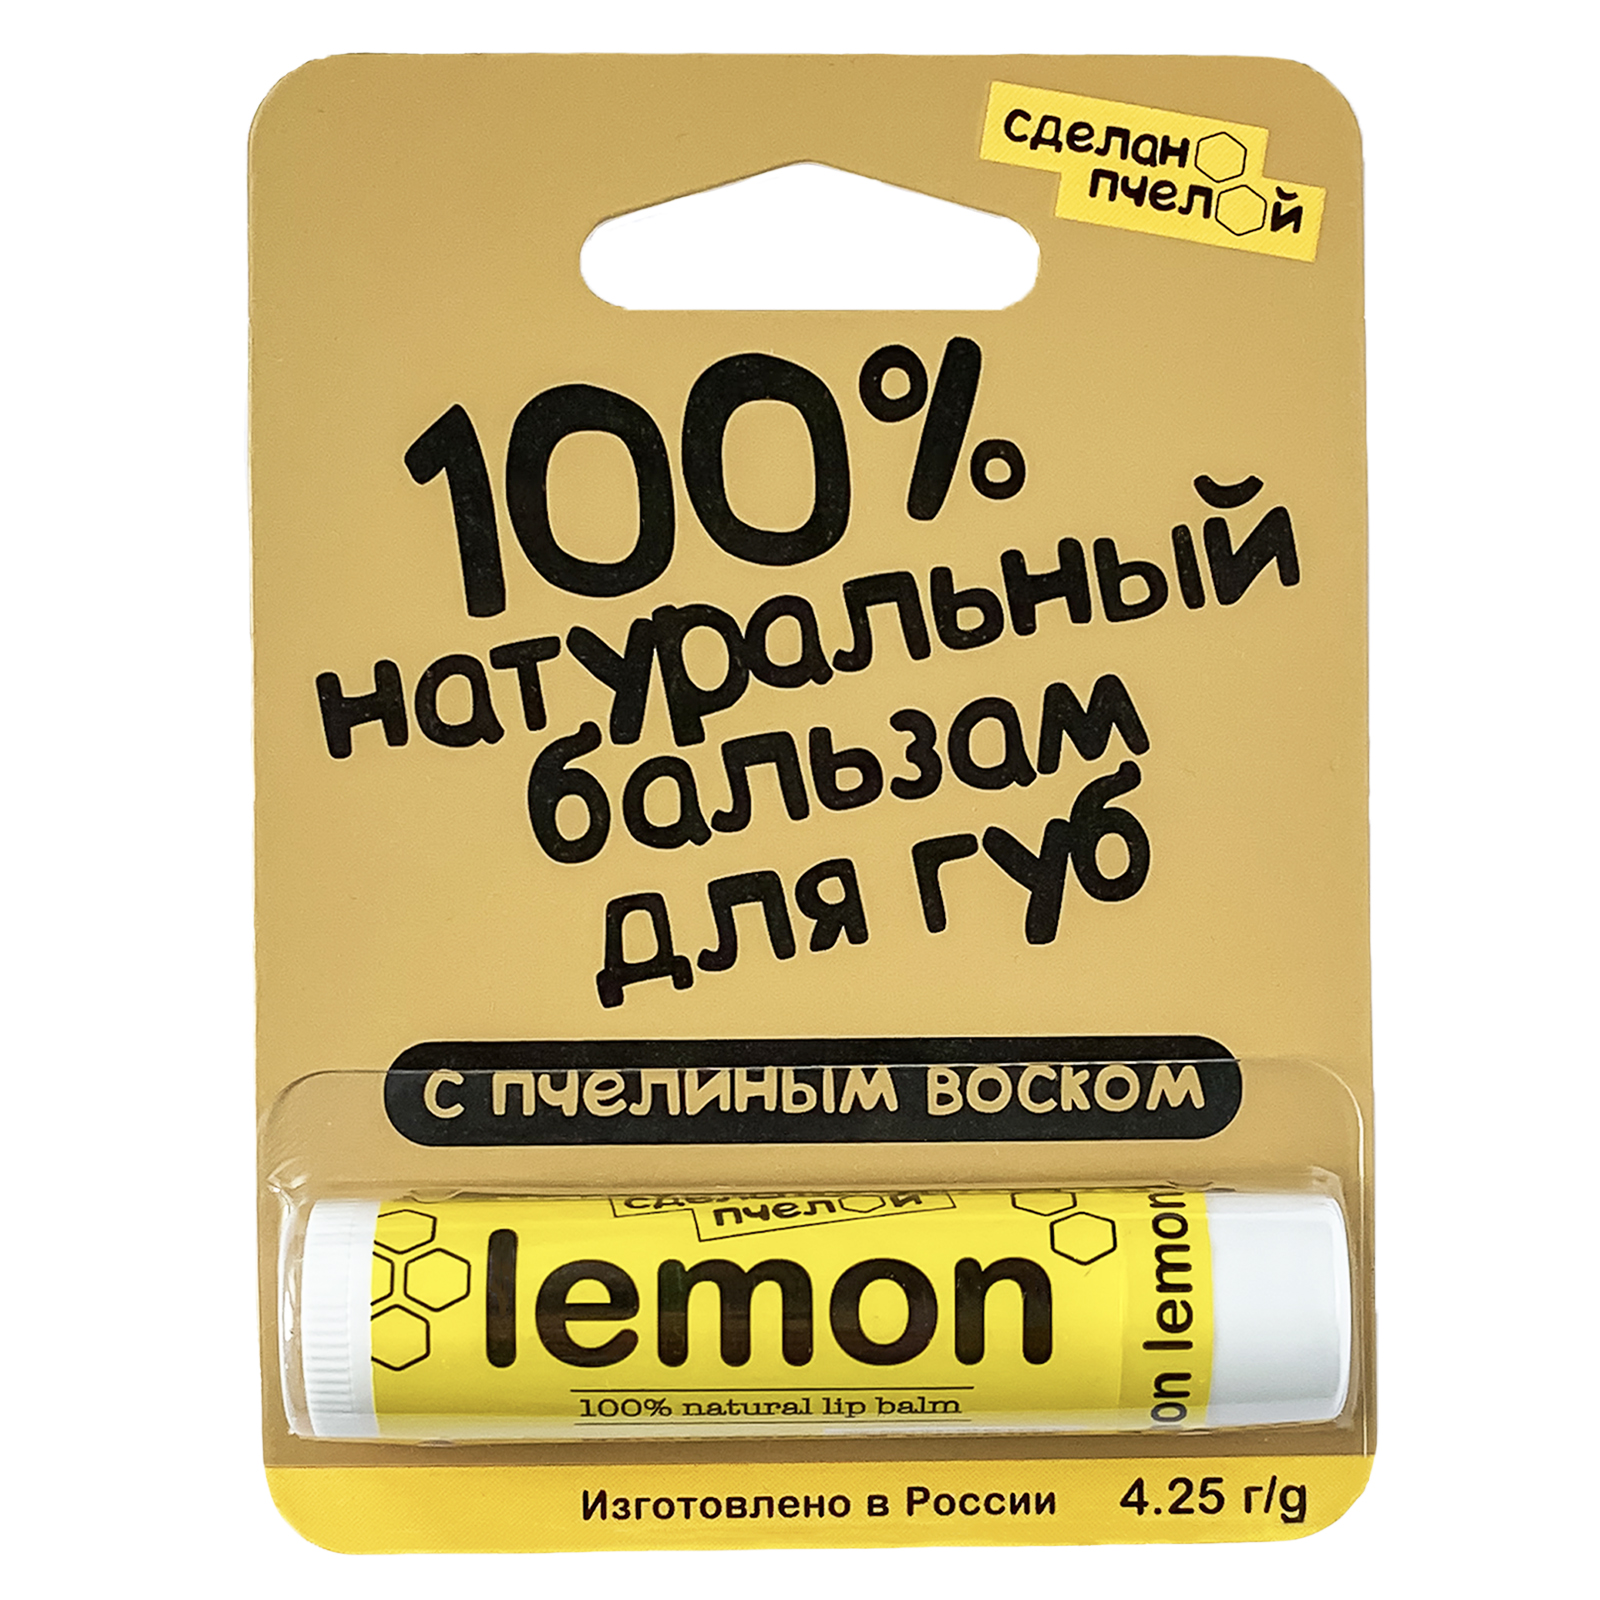 Бальзам для губ с пчелиным воском "Лимон" купить 